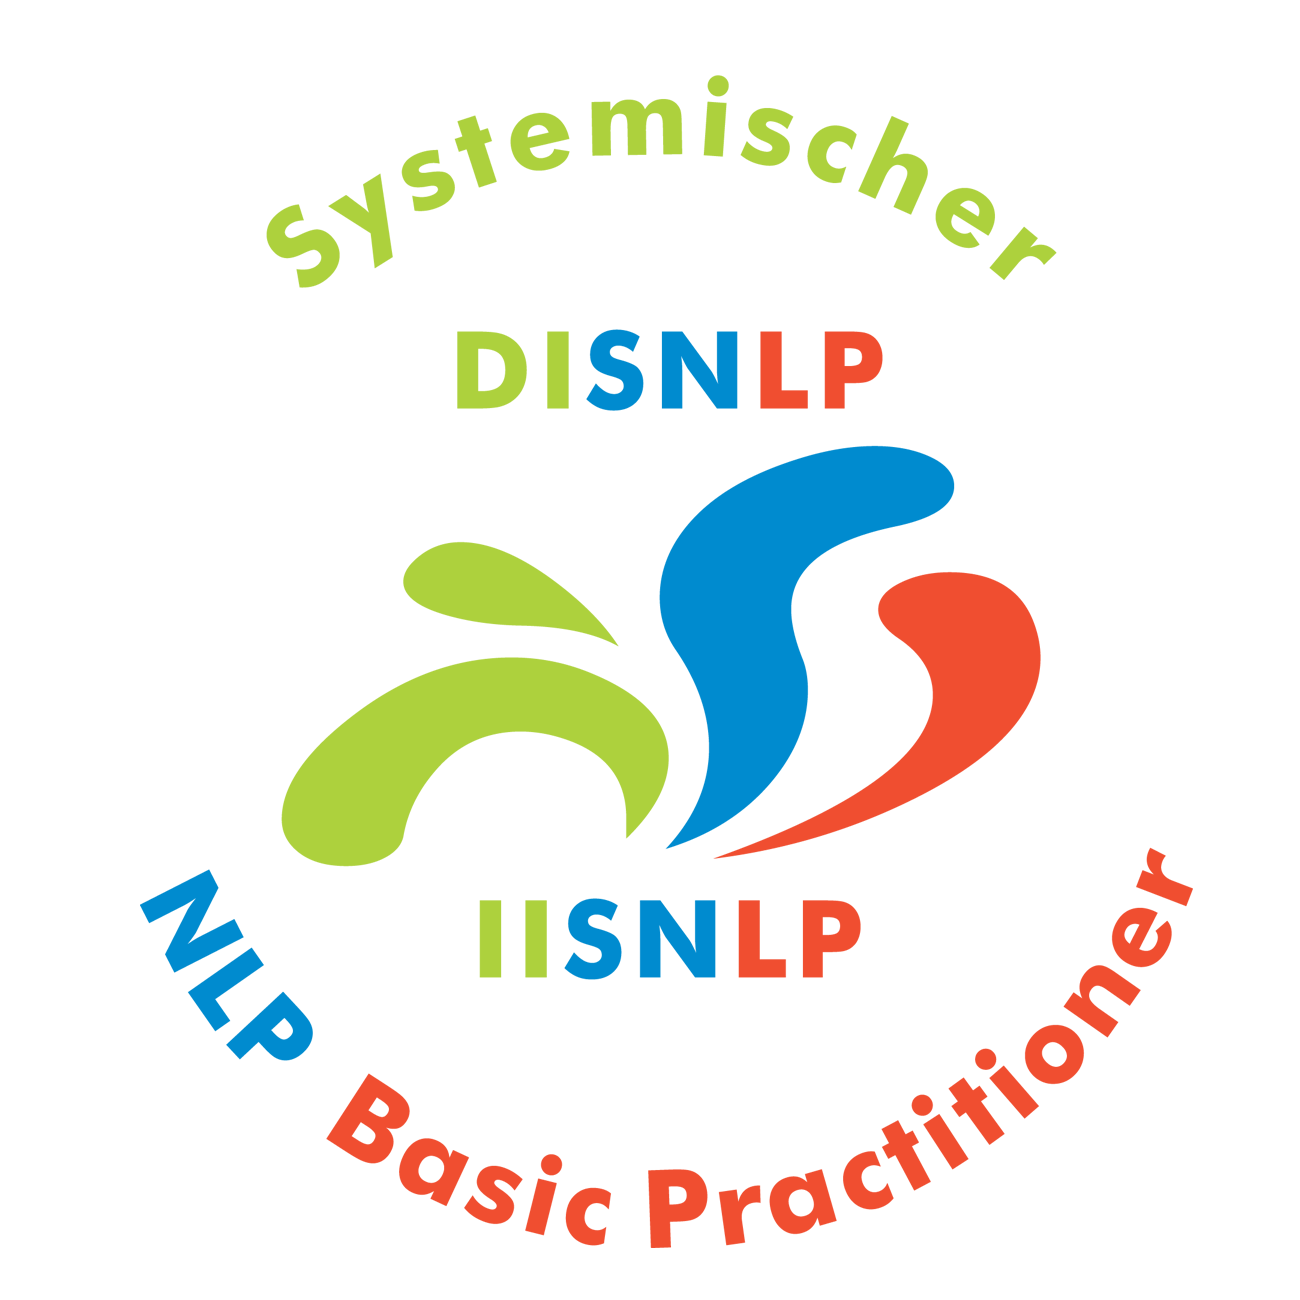 Seminar Selbstbewusstsein, Selbstvertrauen, Selbstwert, Selbstsicherheit stärken Rosenheim Oberbayern mit NLP Coaching Kurs für mehr Selbstbewusstsein